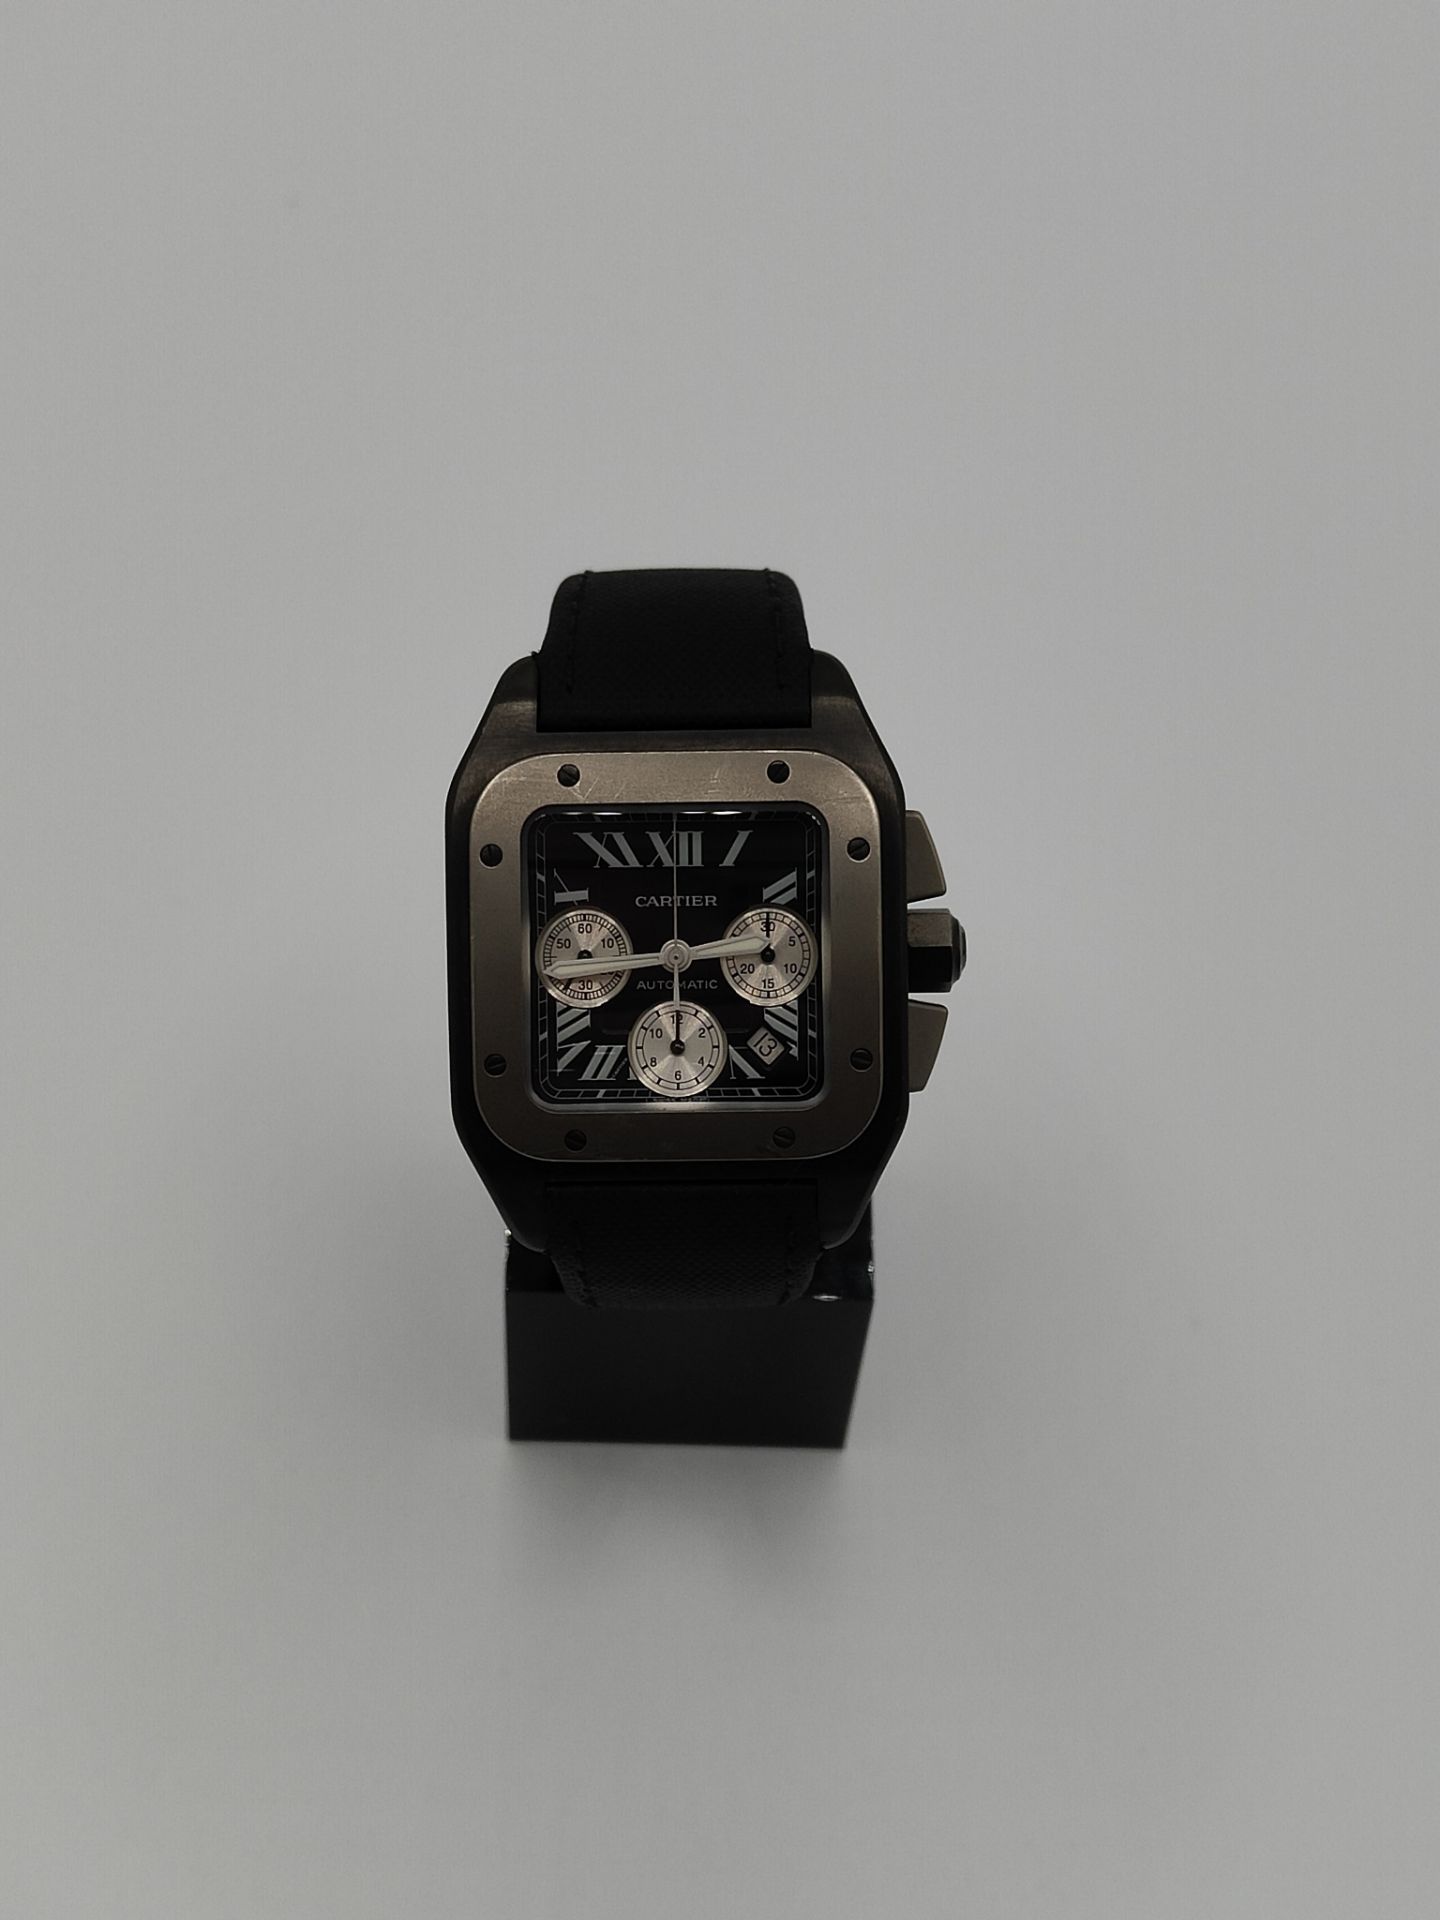 Cartier Santos 100 Auto Watch - Image 5 of 12